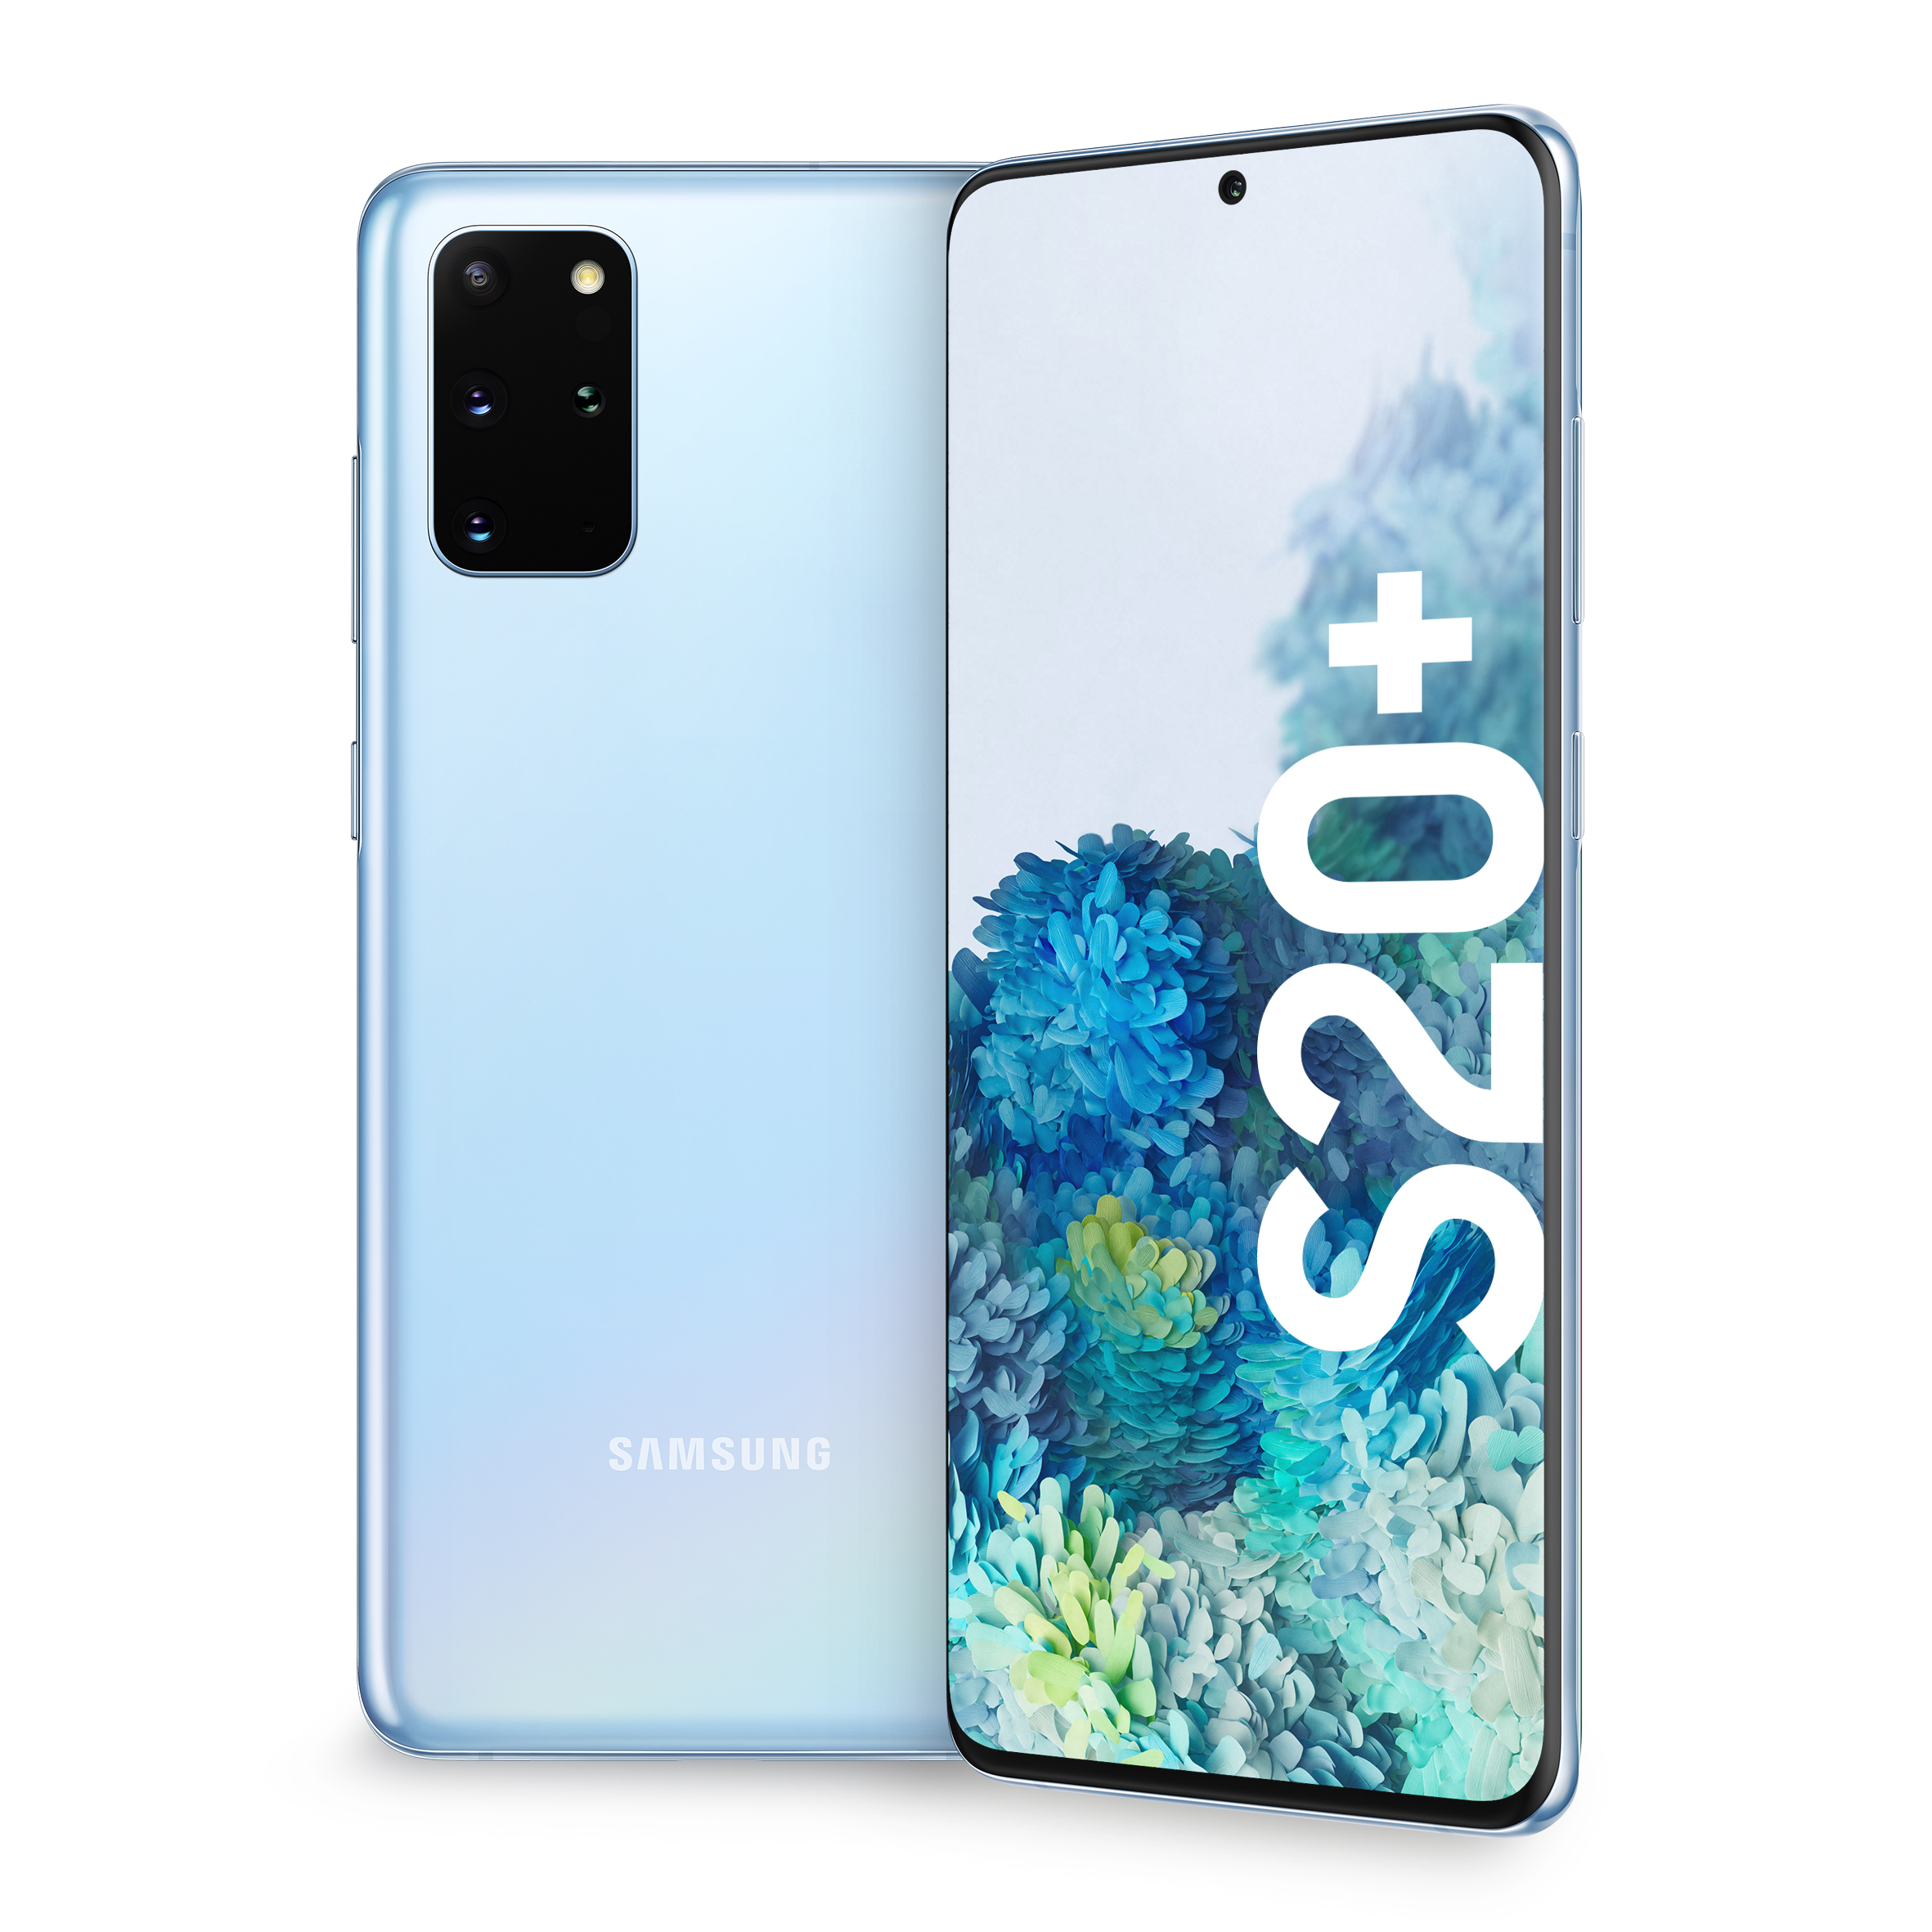 Samsung Galaxy S20+ 128 GB / cloud blue / (dualsim)